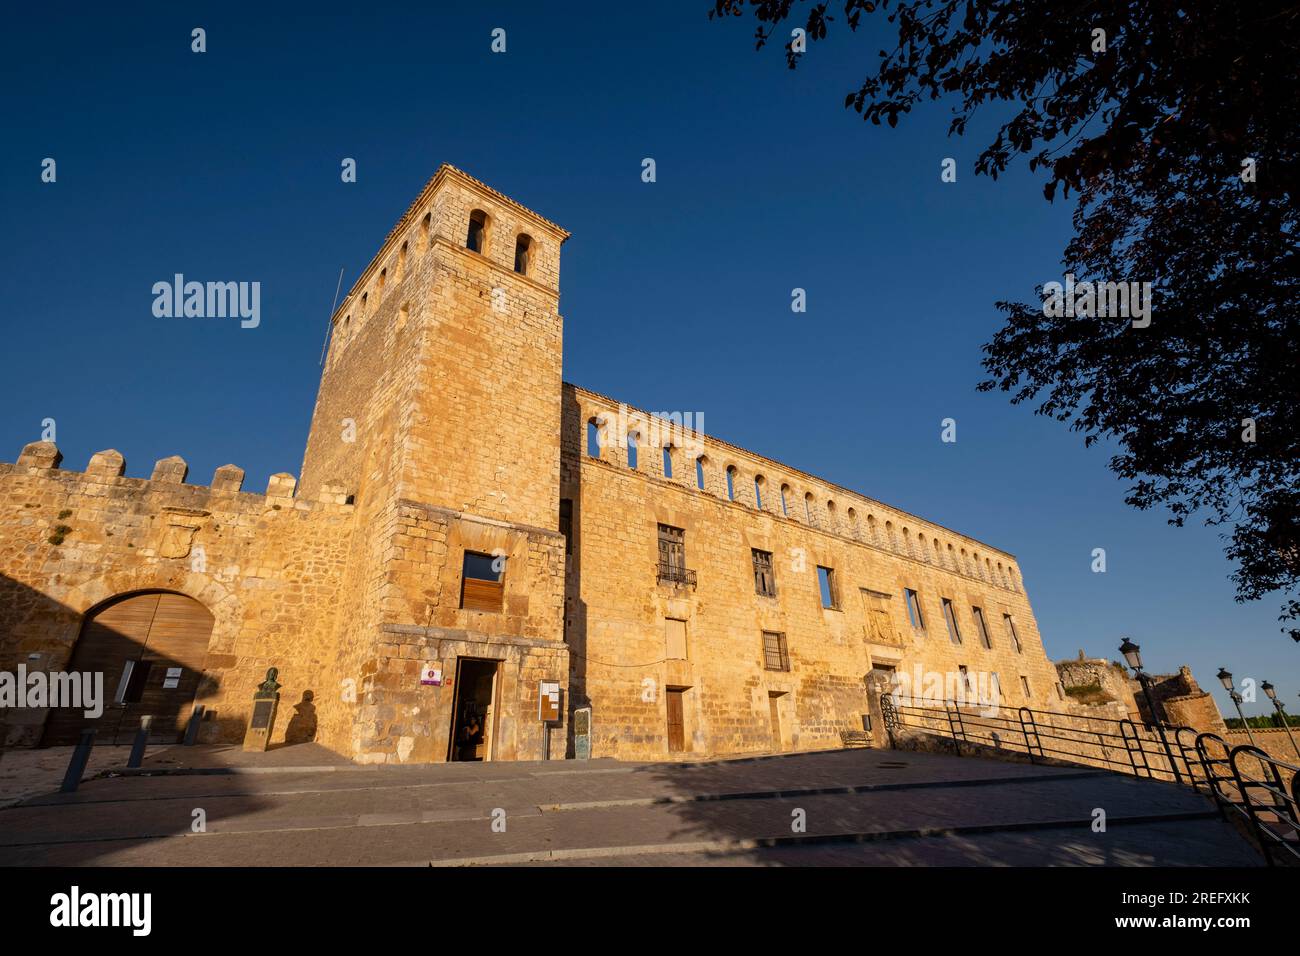 Palace of the Marquises, 16th century, - Palacio de la Villa - Berlanga de Duero, Soria, autonomous community of Castilla y León, Spain, Europe Stock Photo